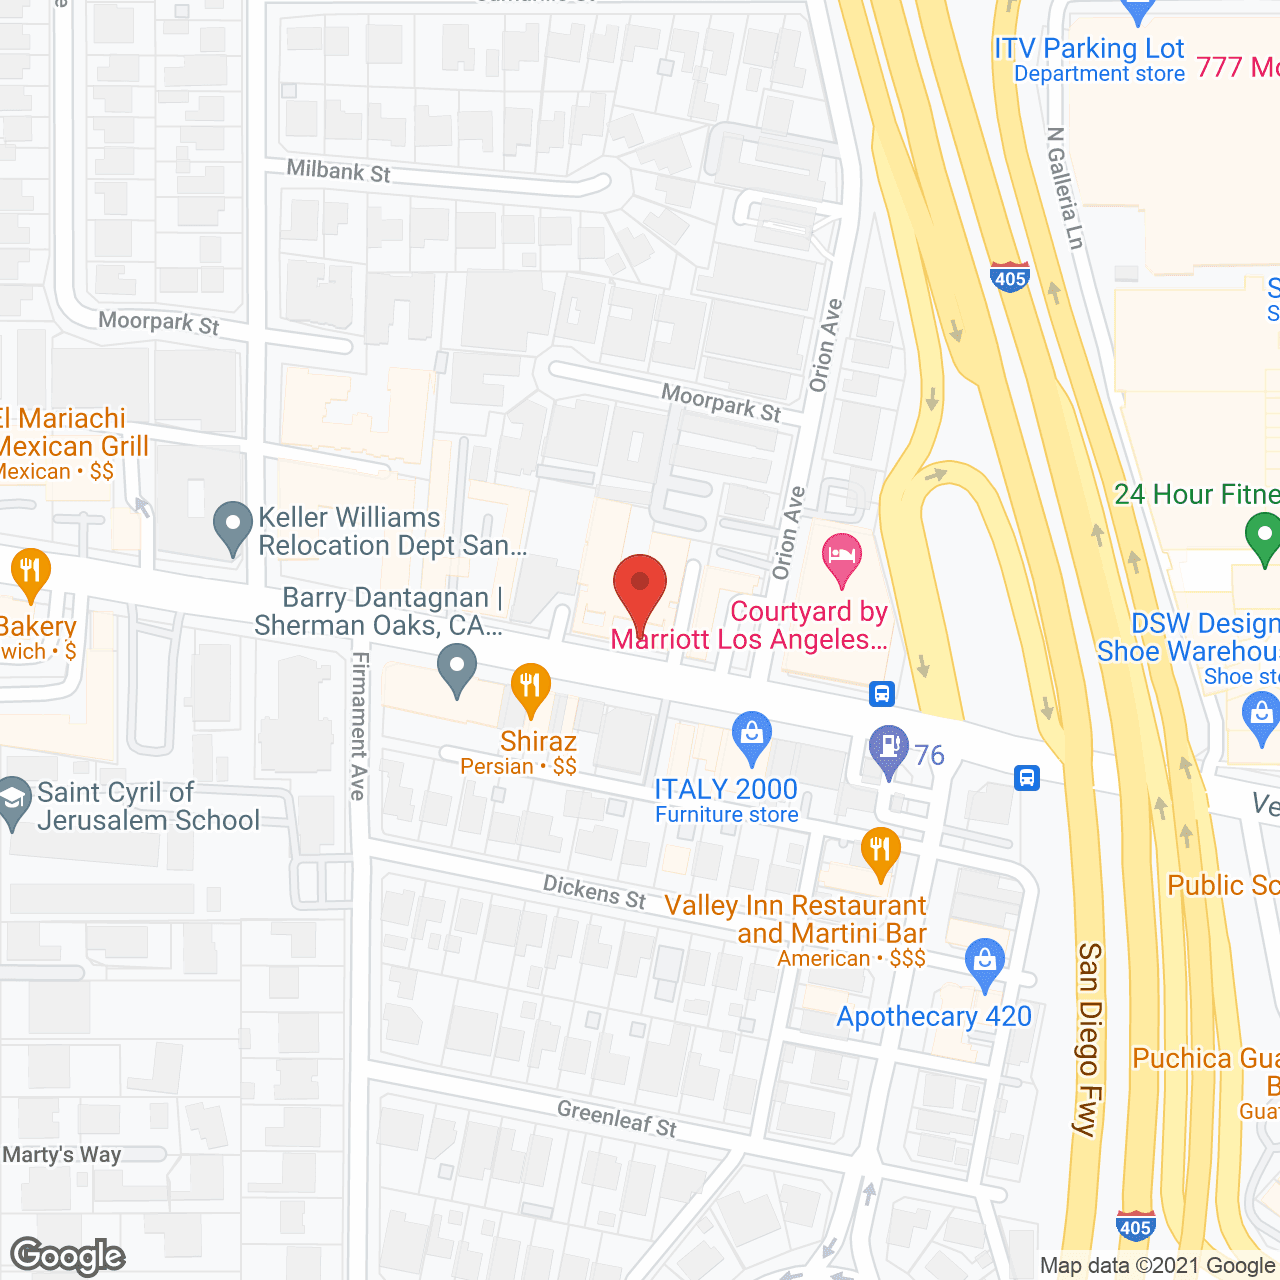 Belmont Village Encino in google map